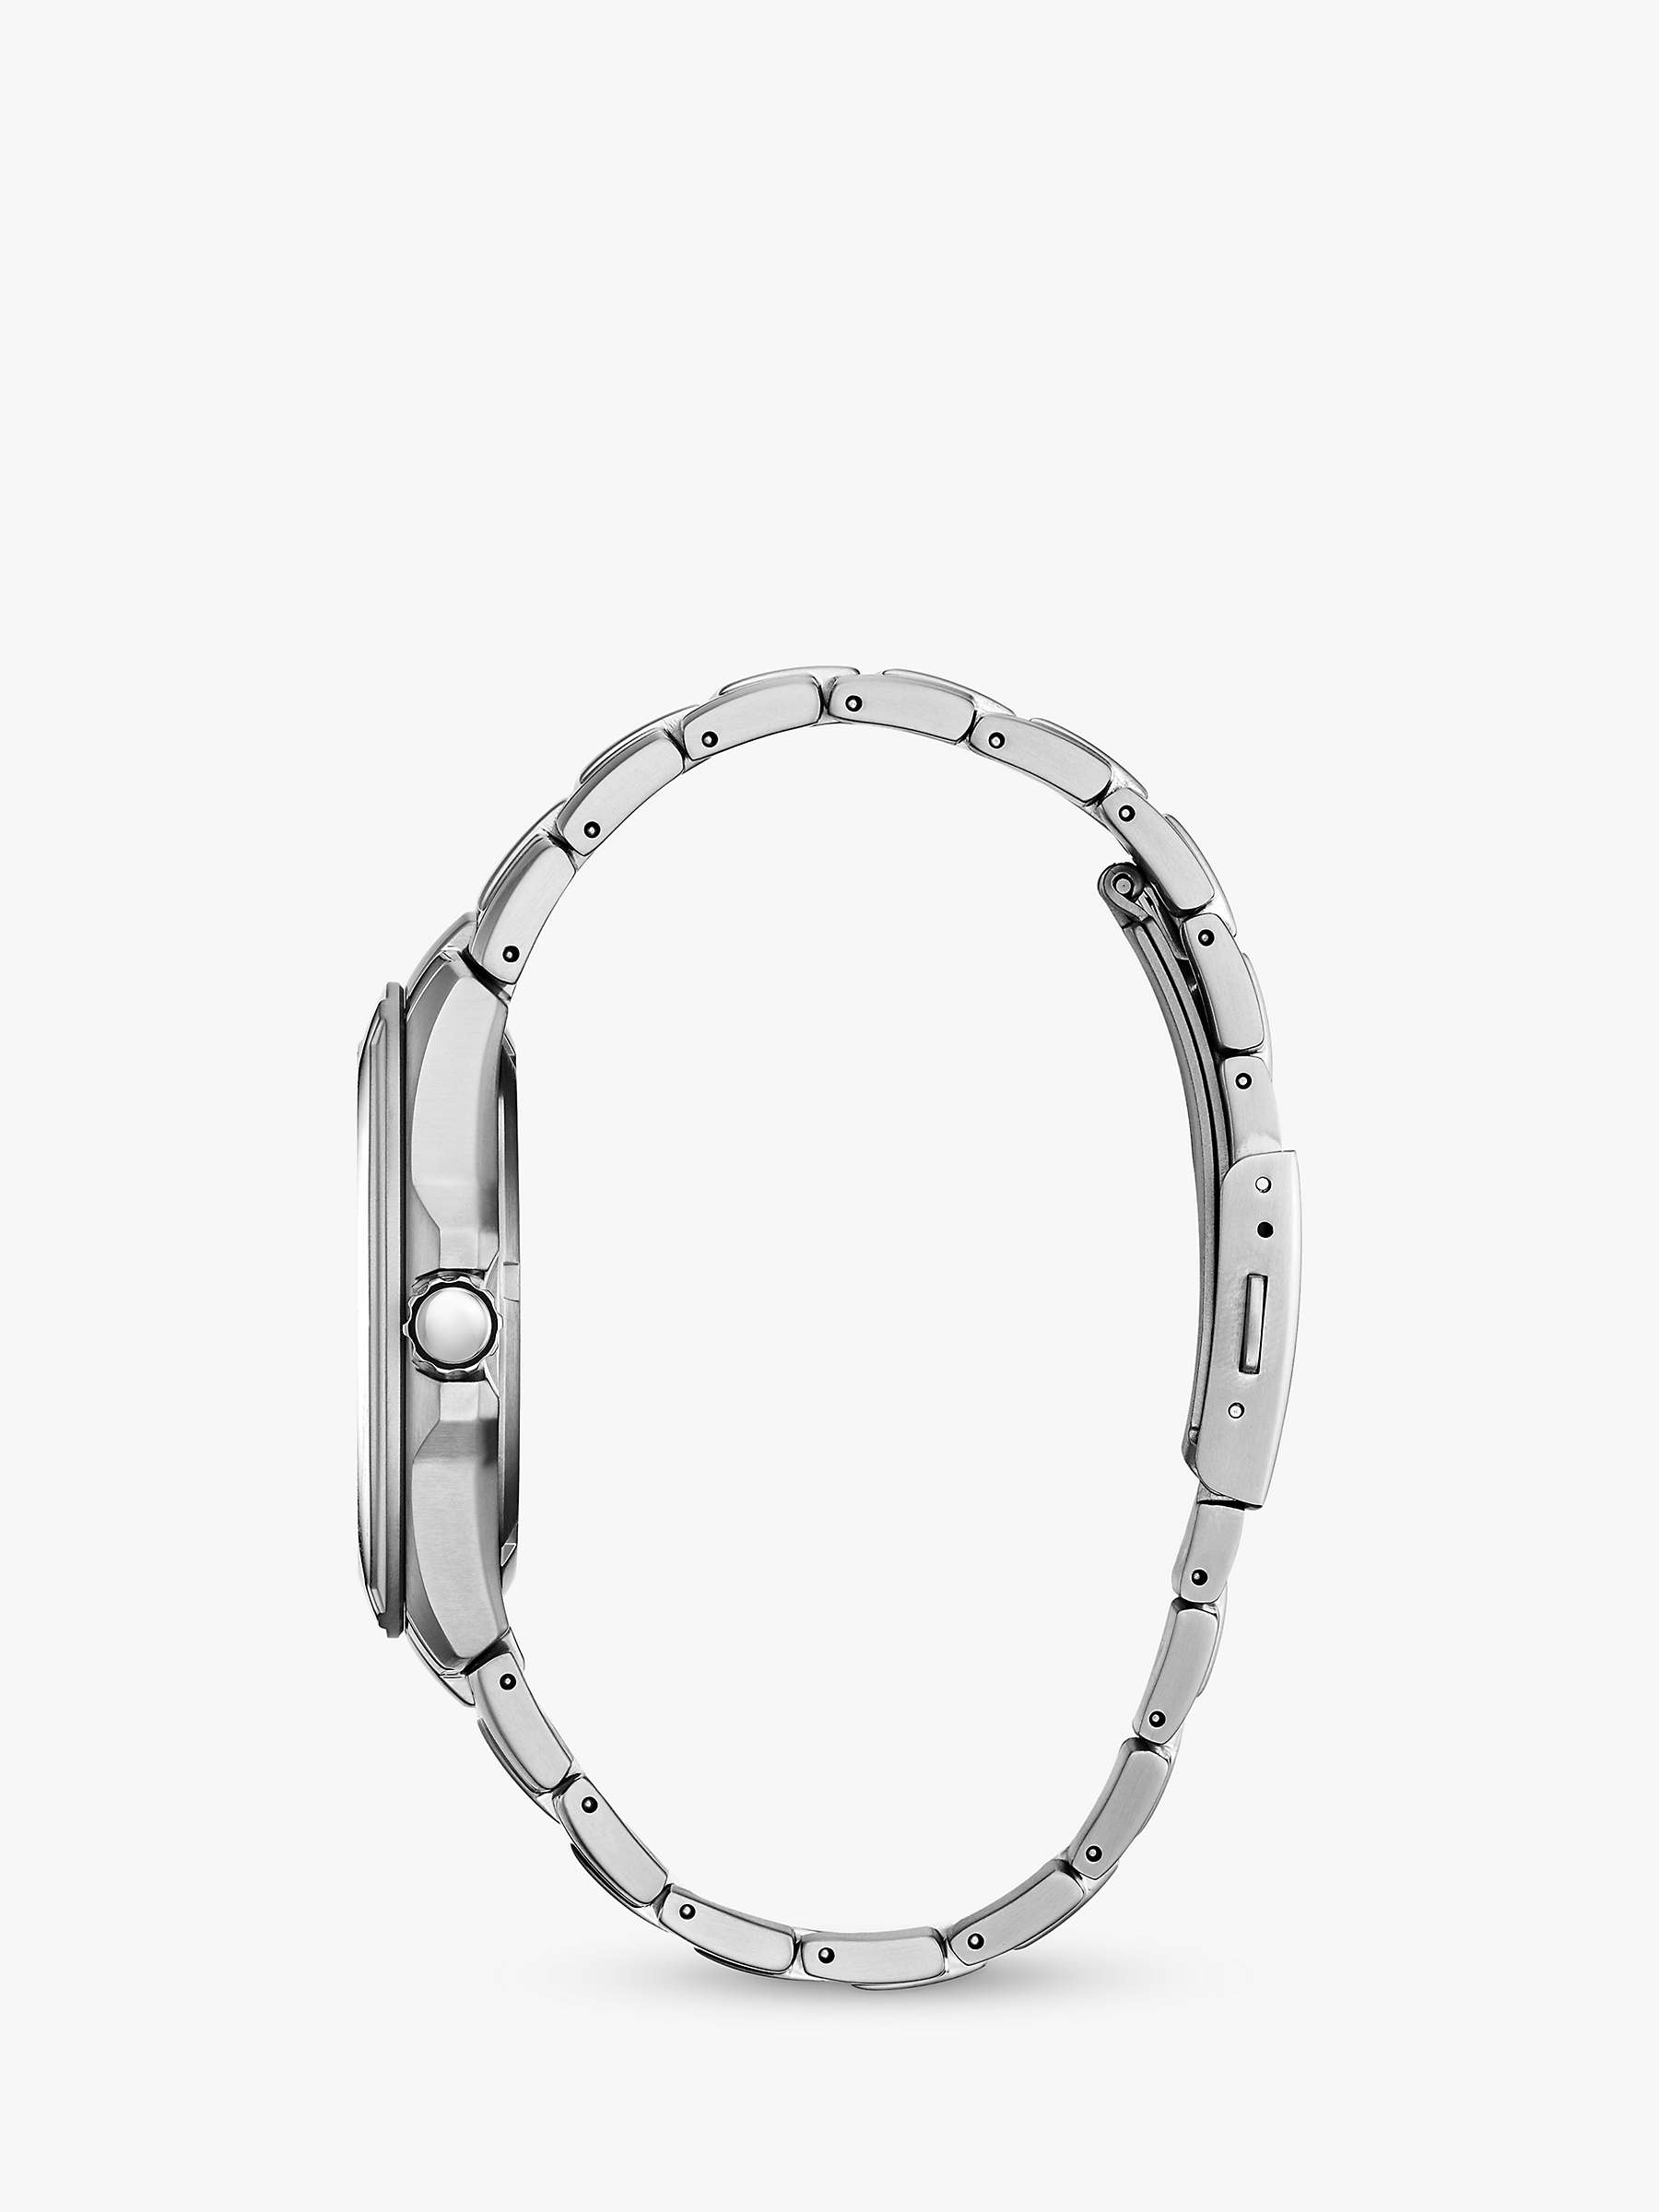 Buy Citizen BM7170-53L Men's Date Titanium Bracelet Strap Watch, Silver/Navy Online at johnlewis.com